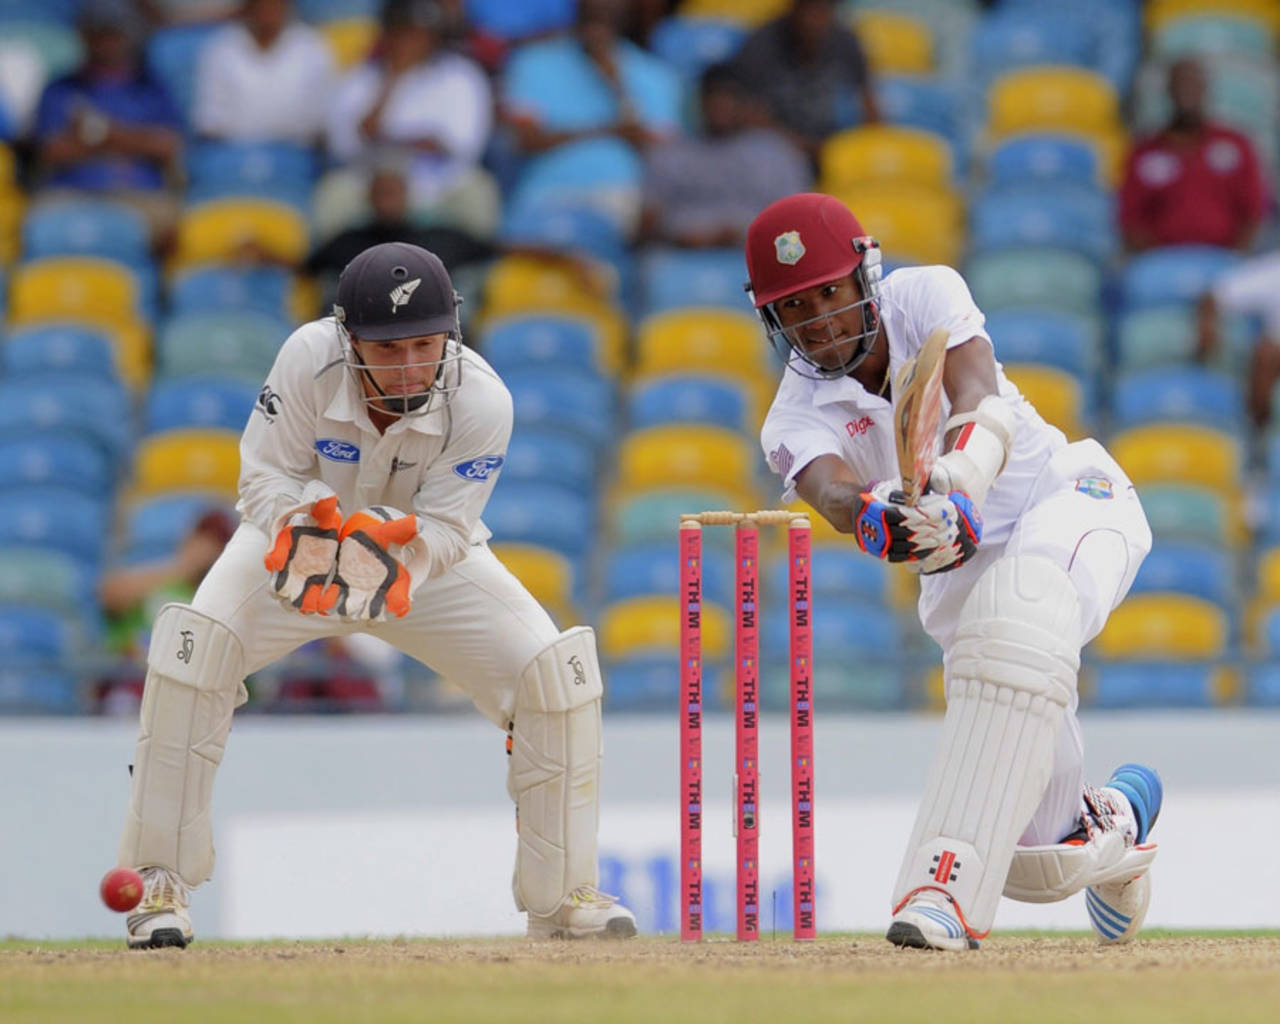 Kraigg Brathwaite stroked an eye-catching half-century, West Indies v New Zealand, 3rd Test, Barbados, 2nd day, June 27, 2014